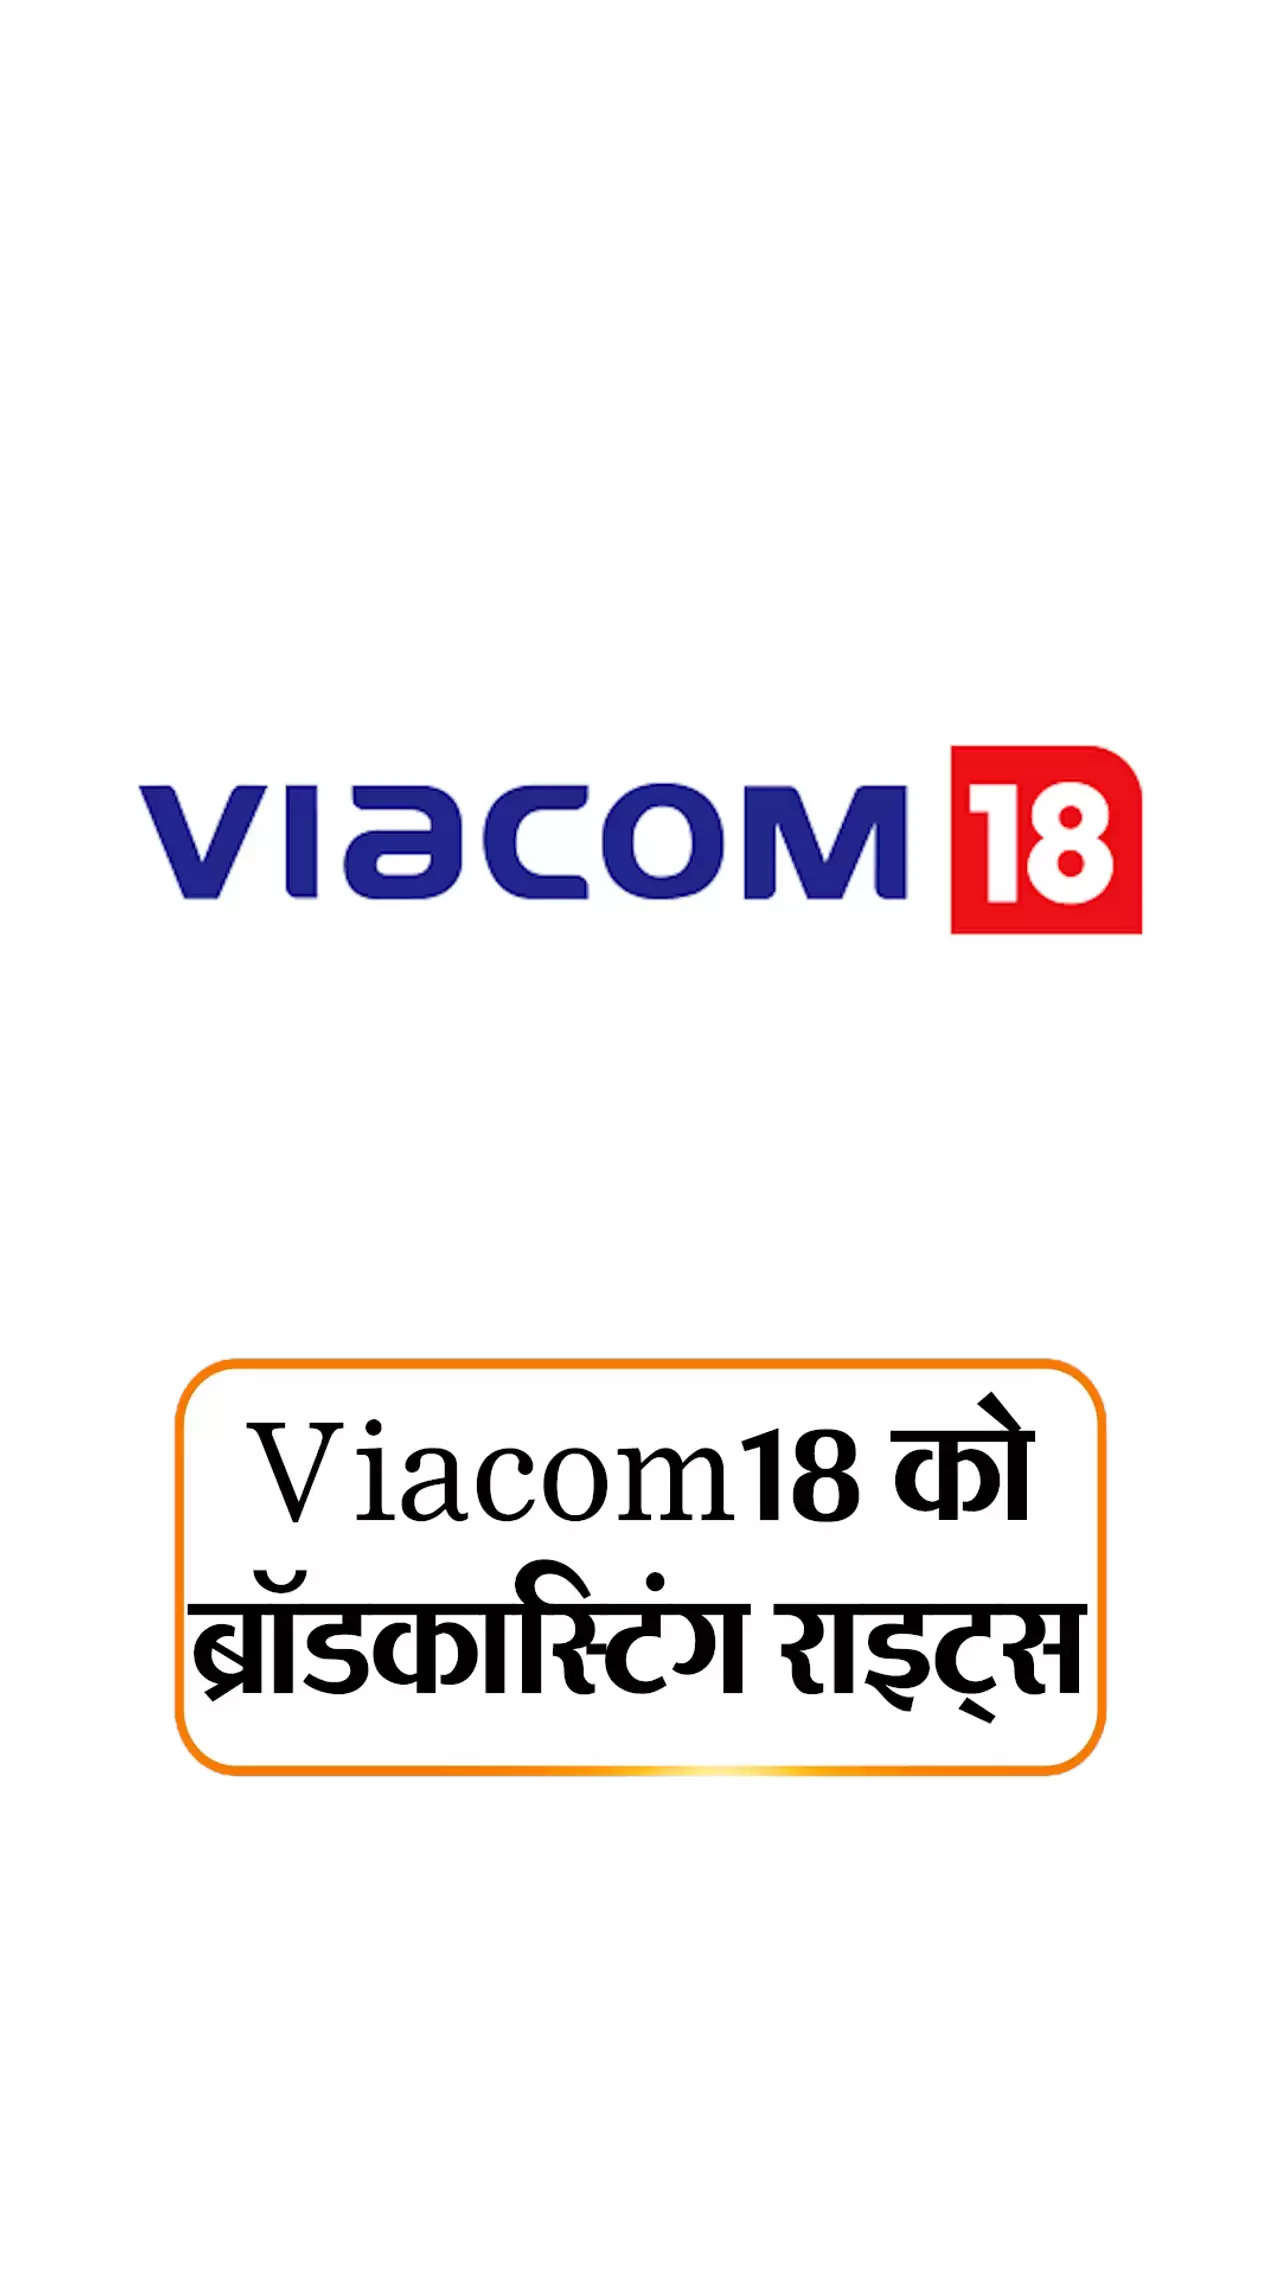 Sport News- Viacom 18 ने 5963 करोड़ में खरीदे BCCI टीवी और डिजिटल मीडिया राइट्स